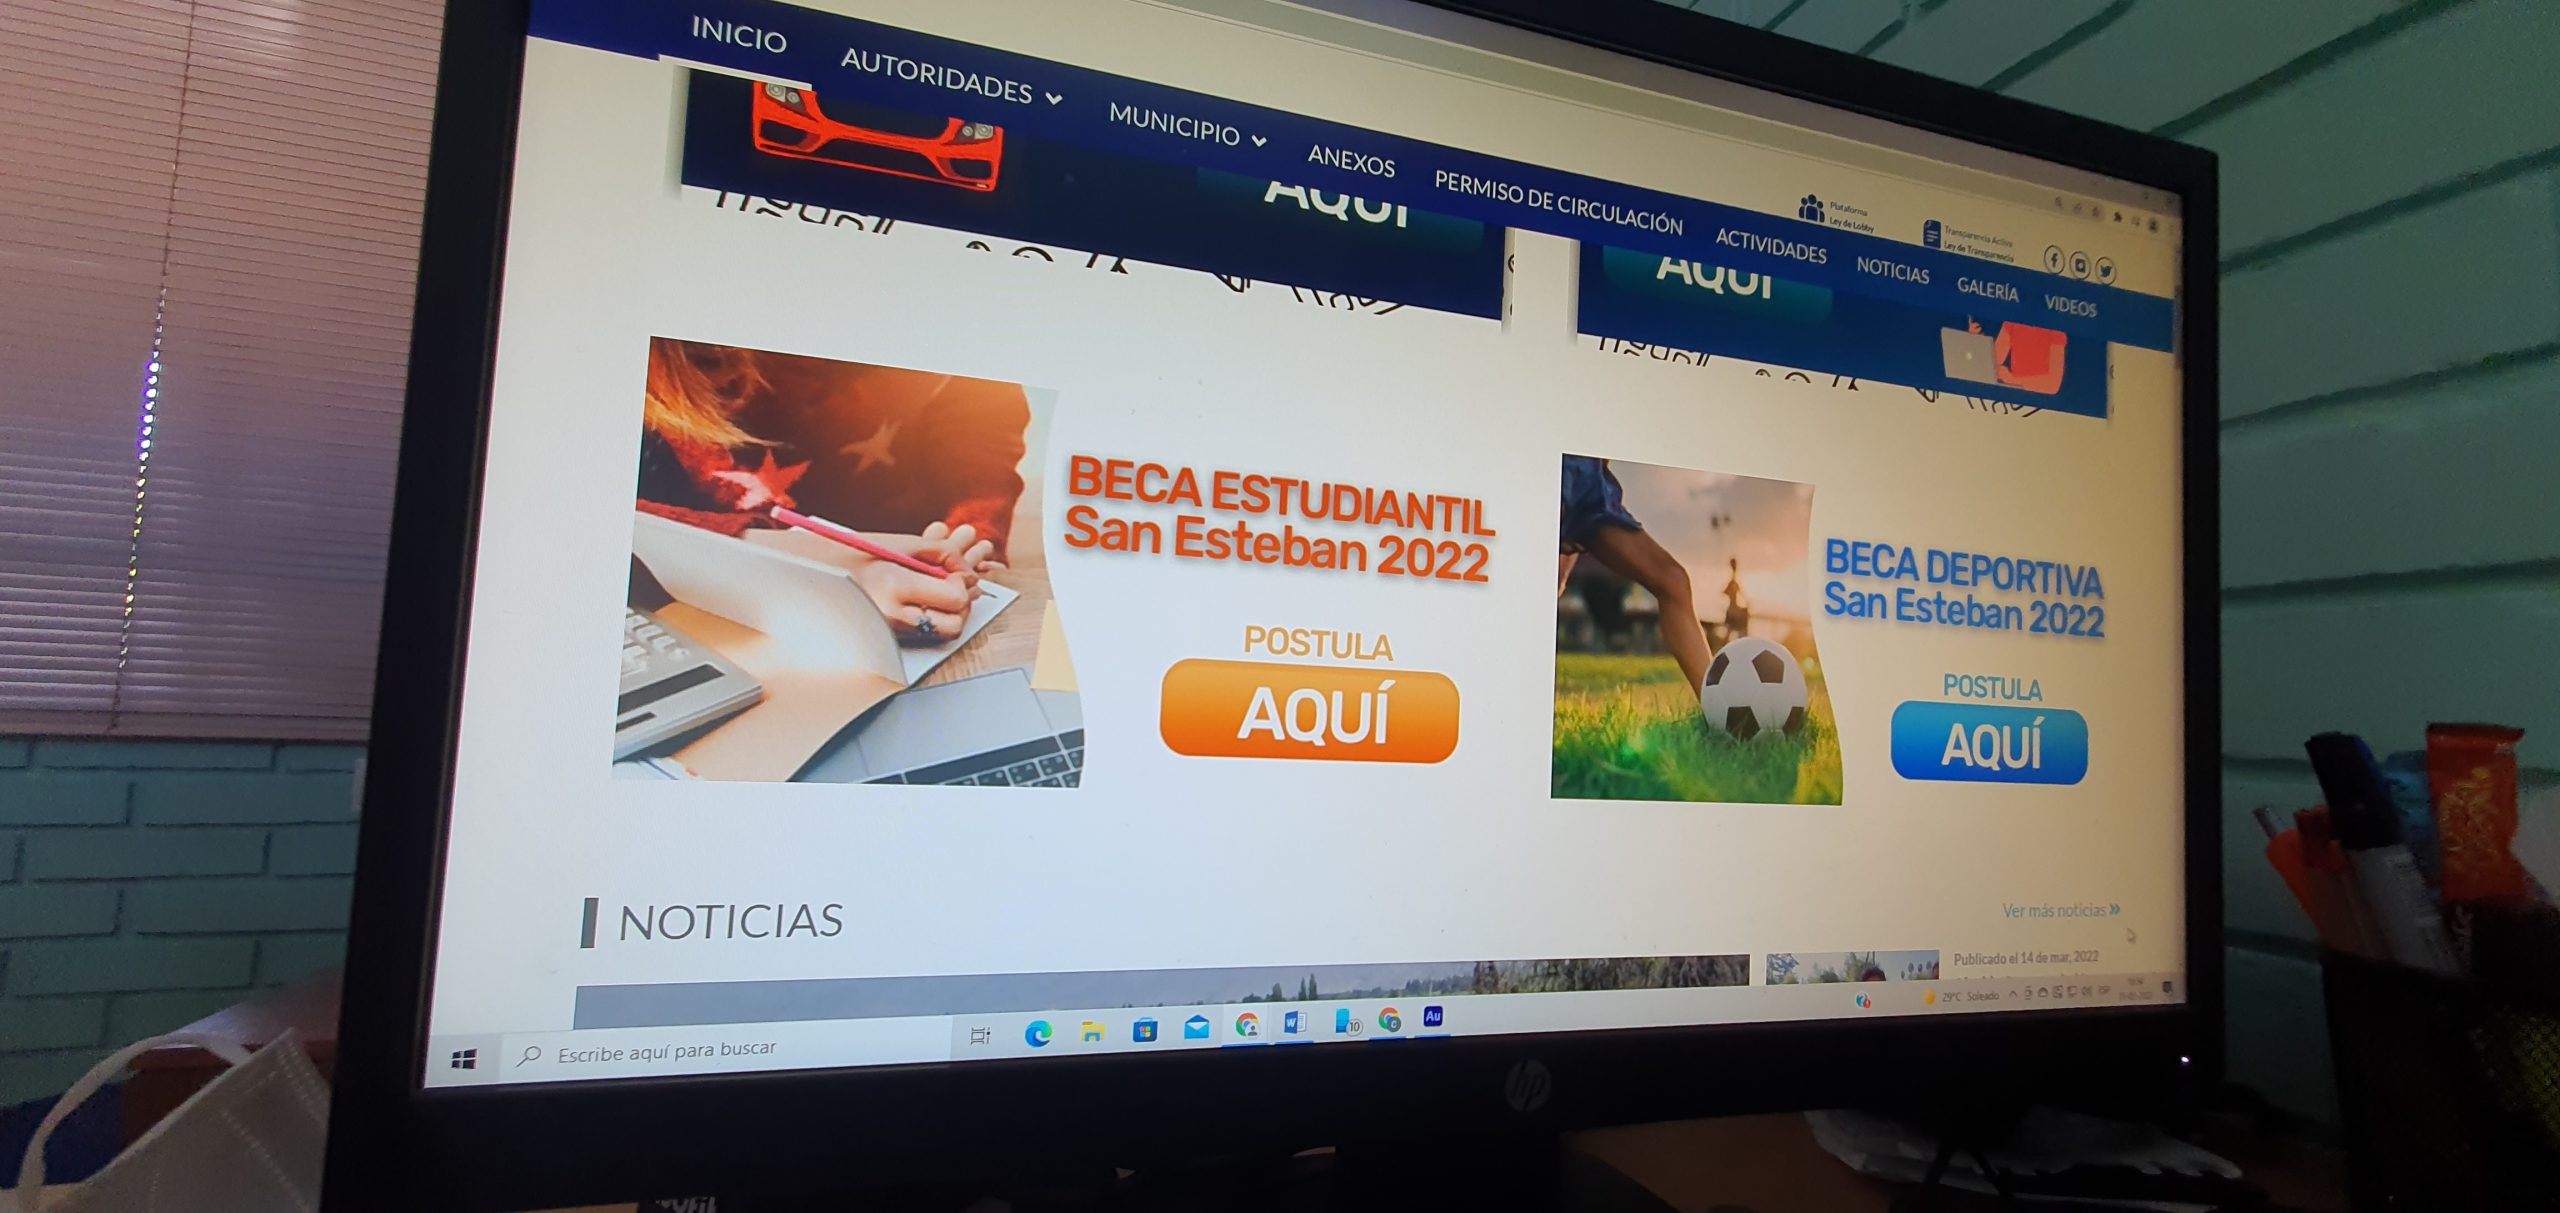 SAN ESTEBAN:  Municipio de San Esteban habilitó postulaciones online a becas deportiva y de educación 2022